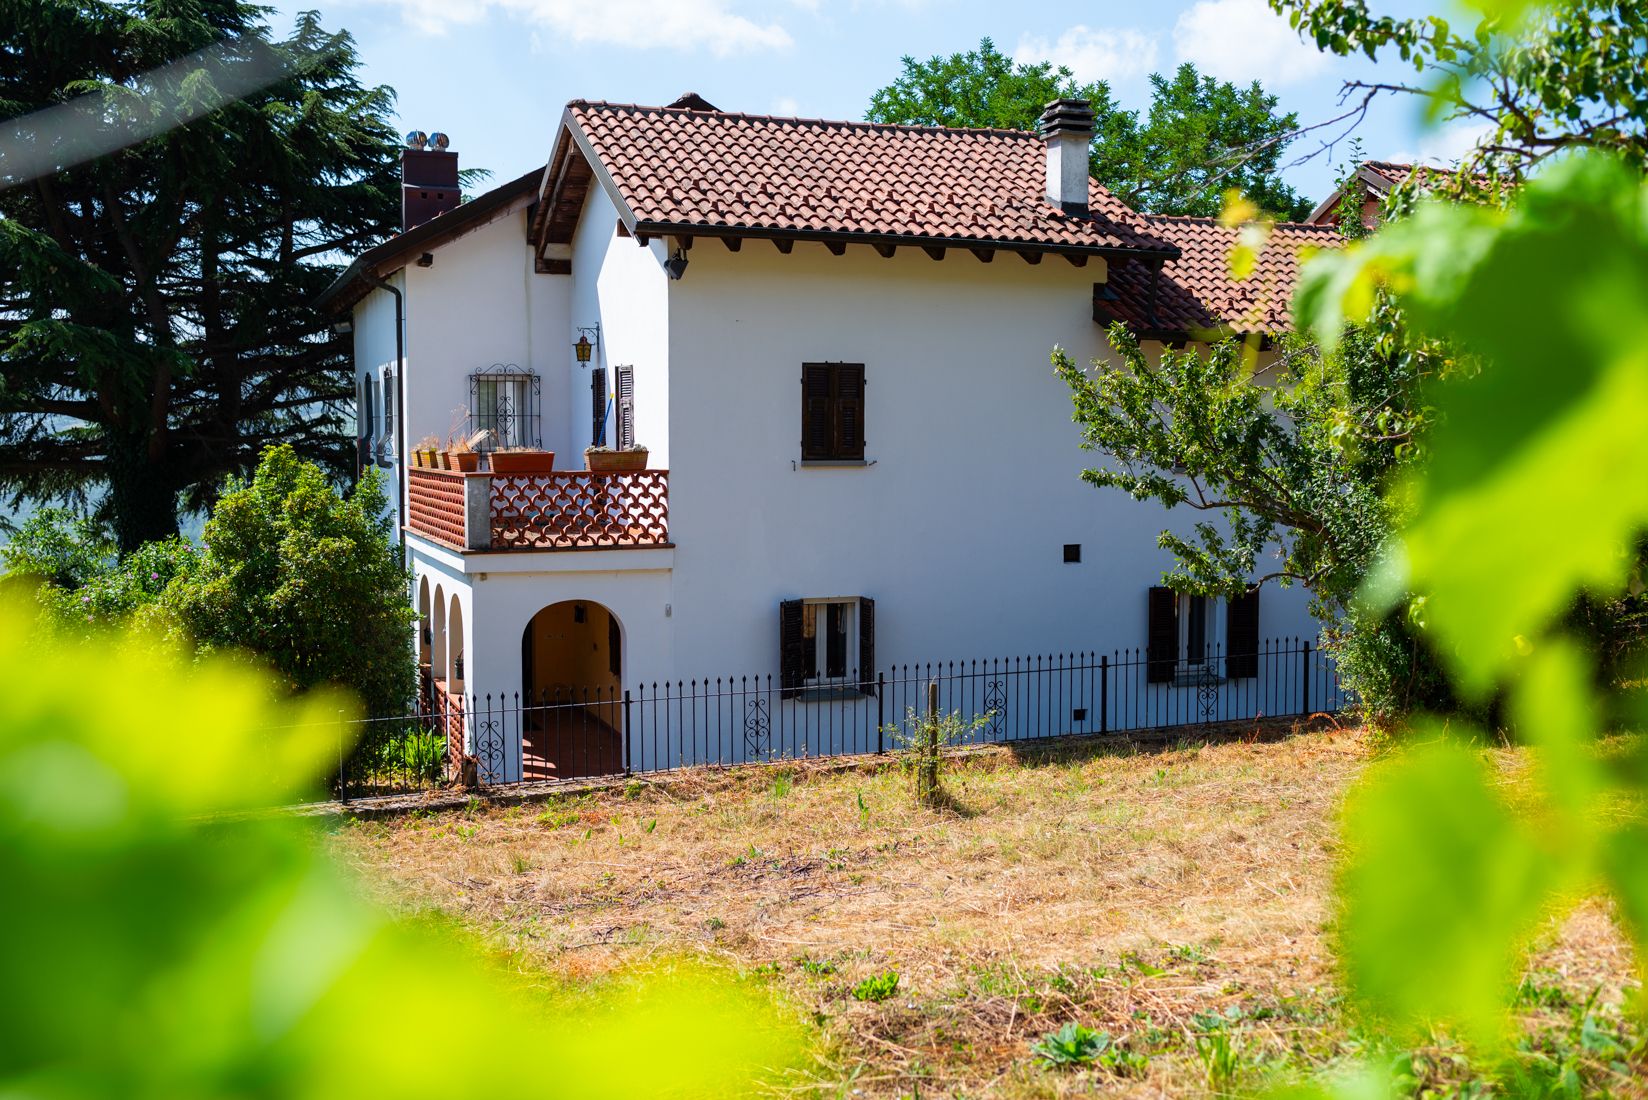 For sale cottage in quiet zone Vesime Piemonte